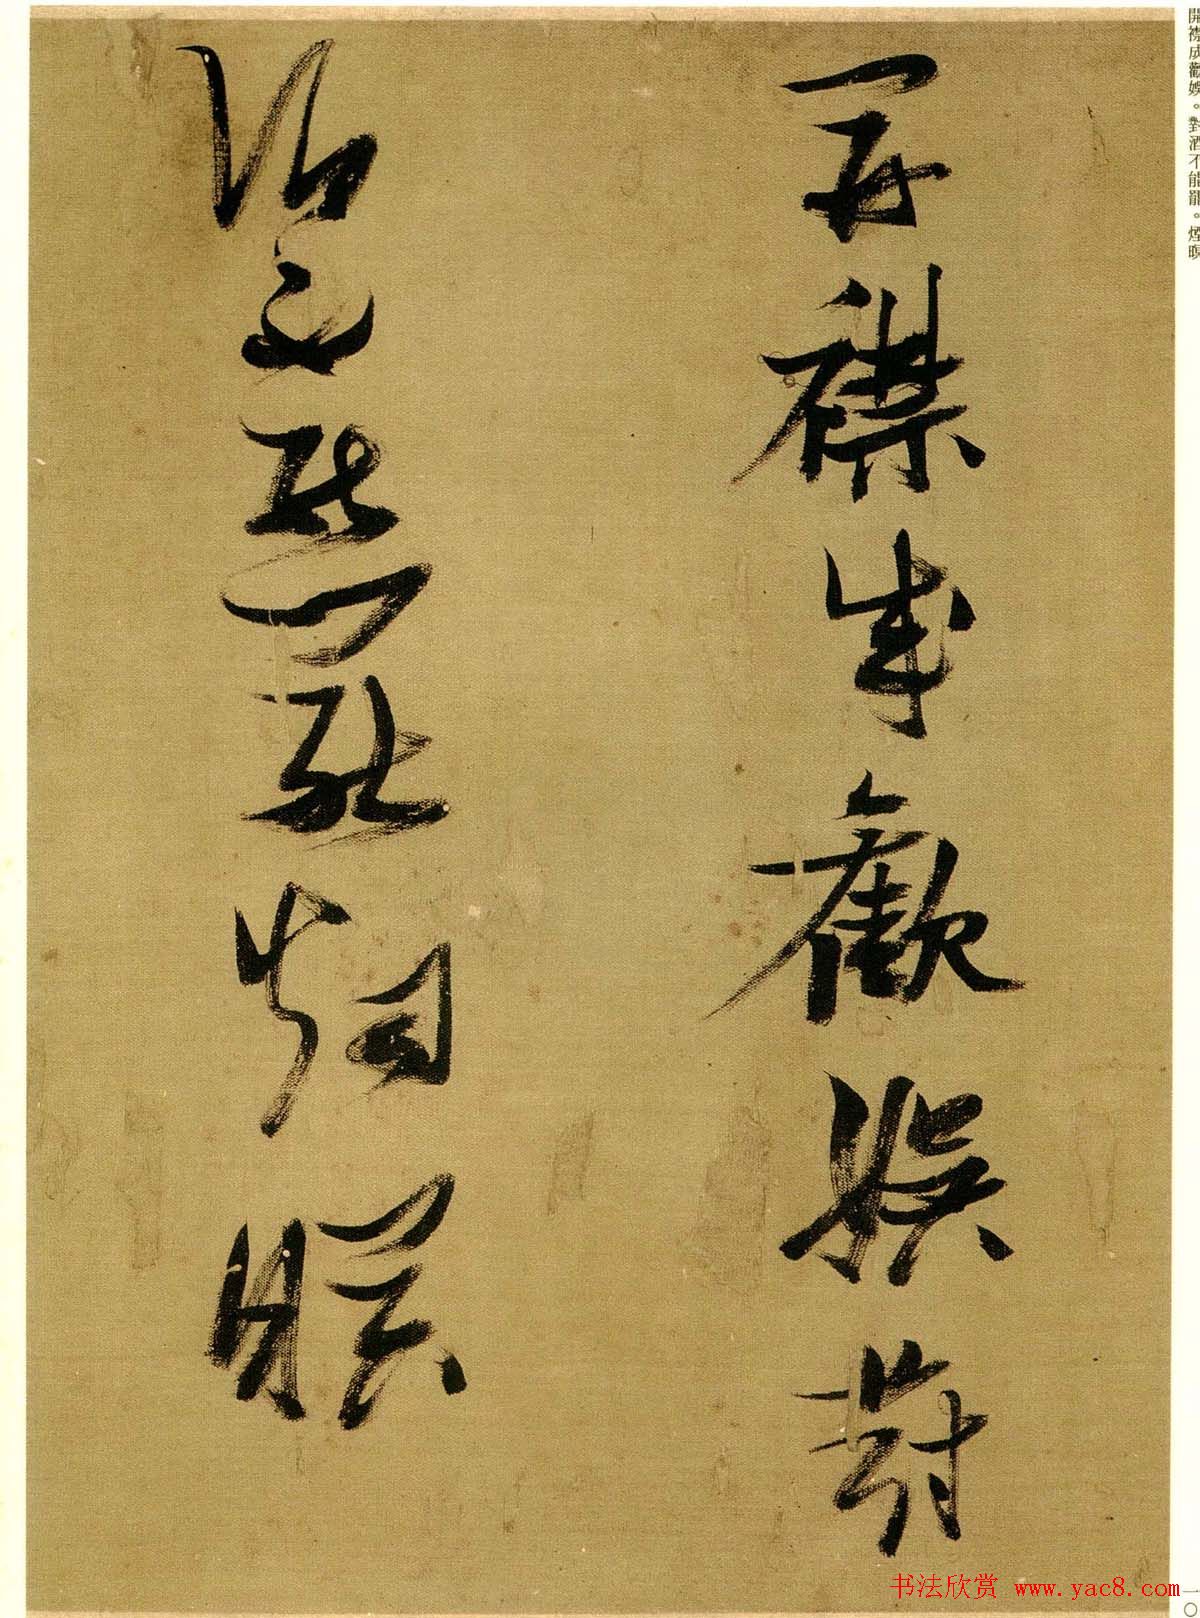 张瑞图行草书法欣赏《孟襄阳诗卷》